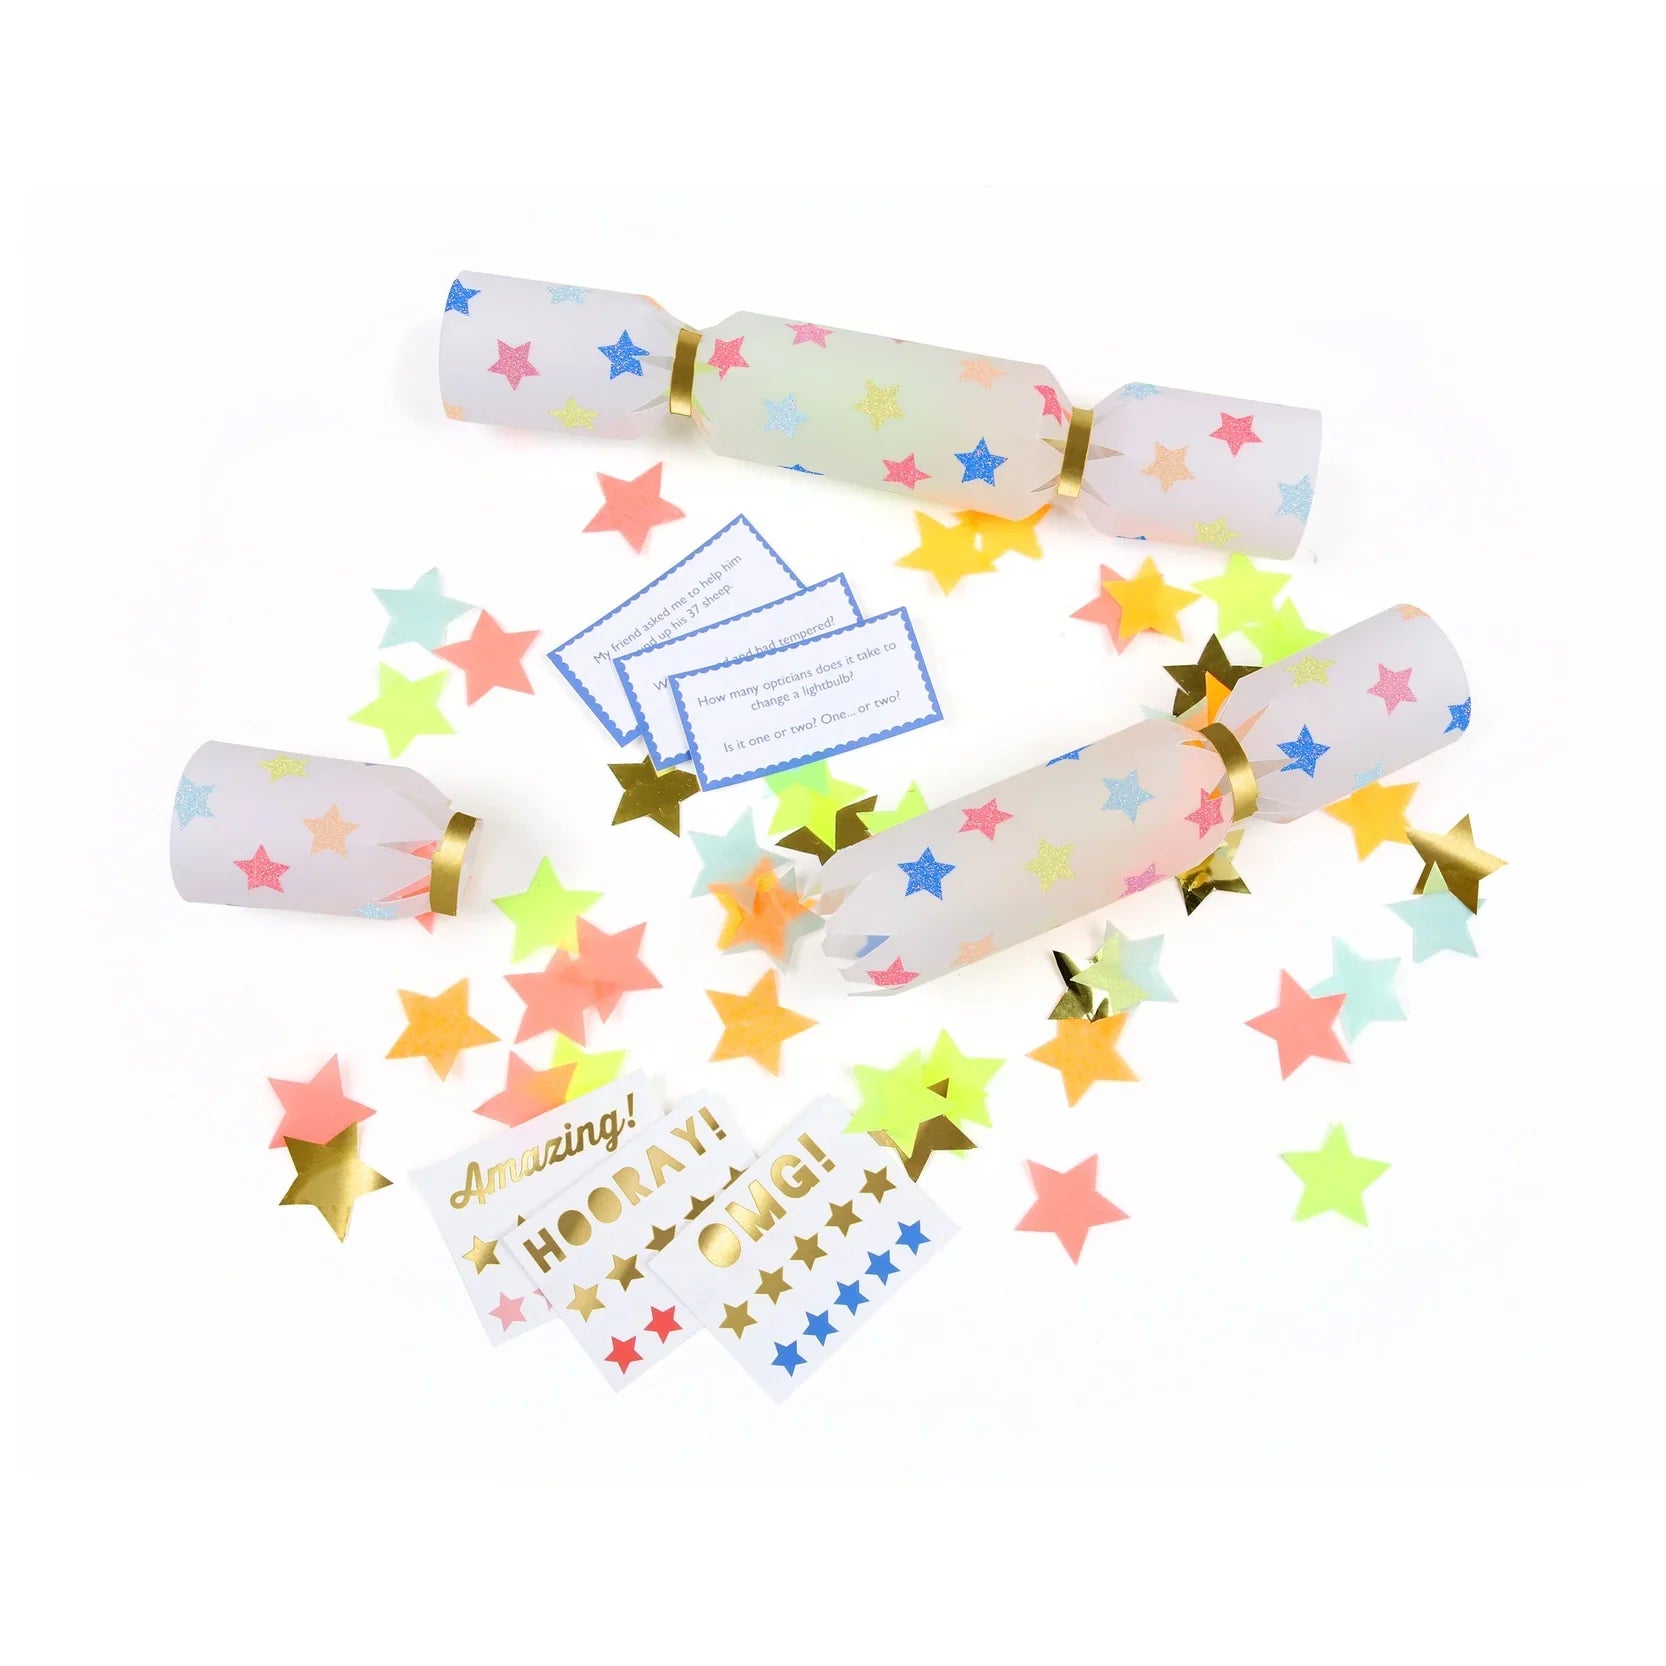 Multicolour star confetti Small crackers - set of 6-Little Fish Co.